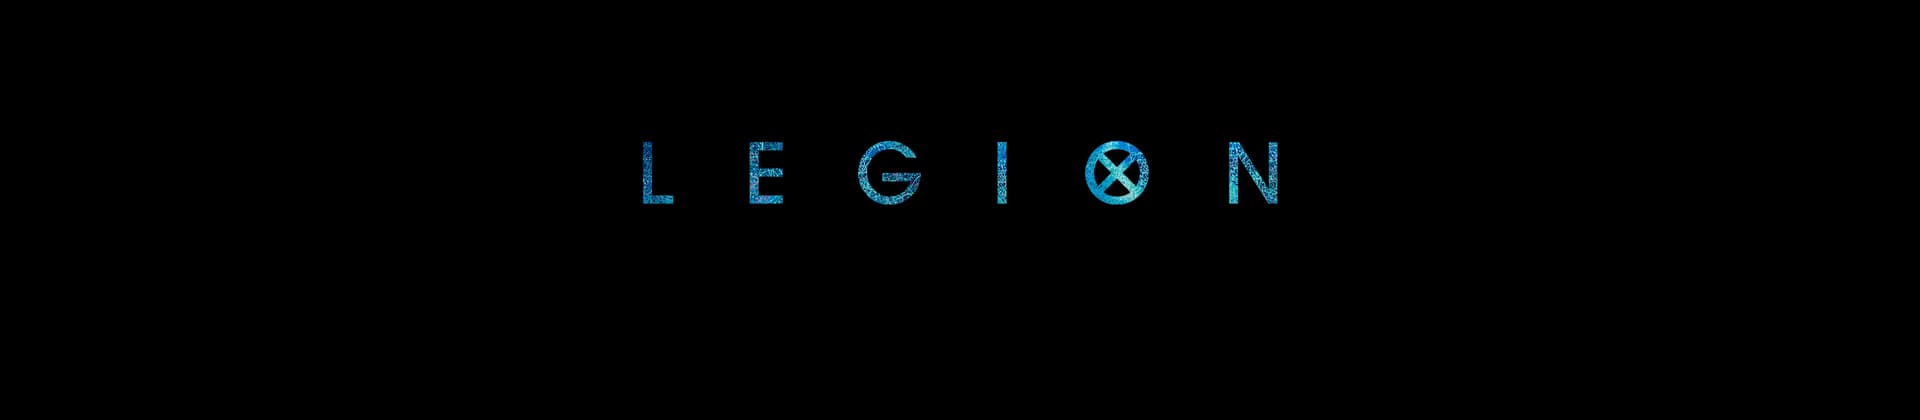 Legion TV Show Season 2 Logo On Black